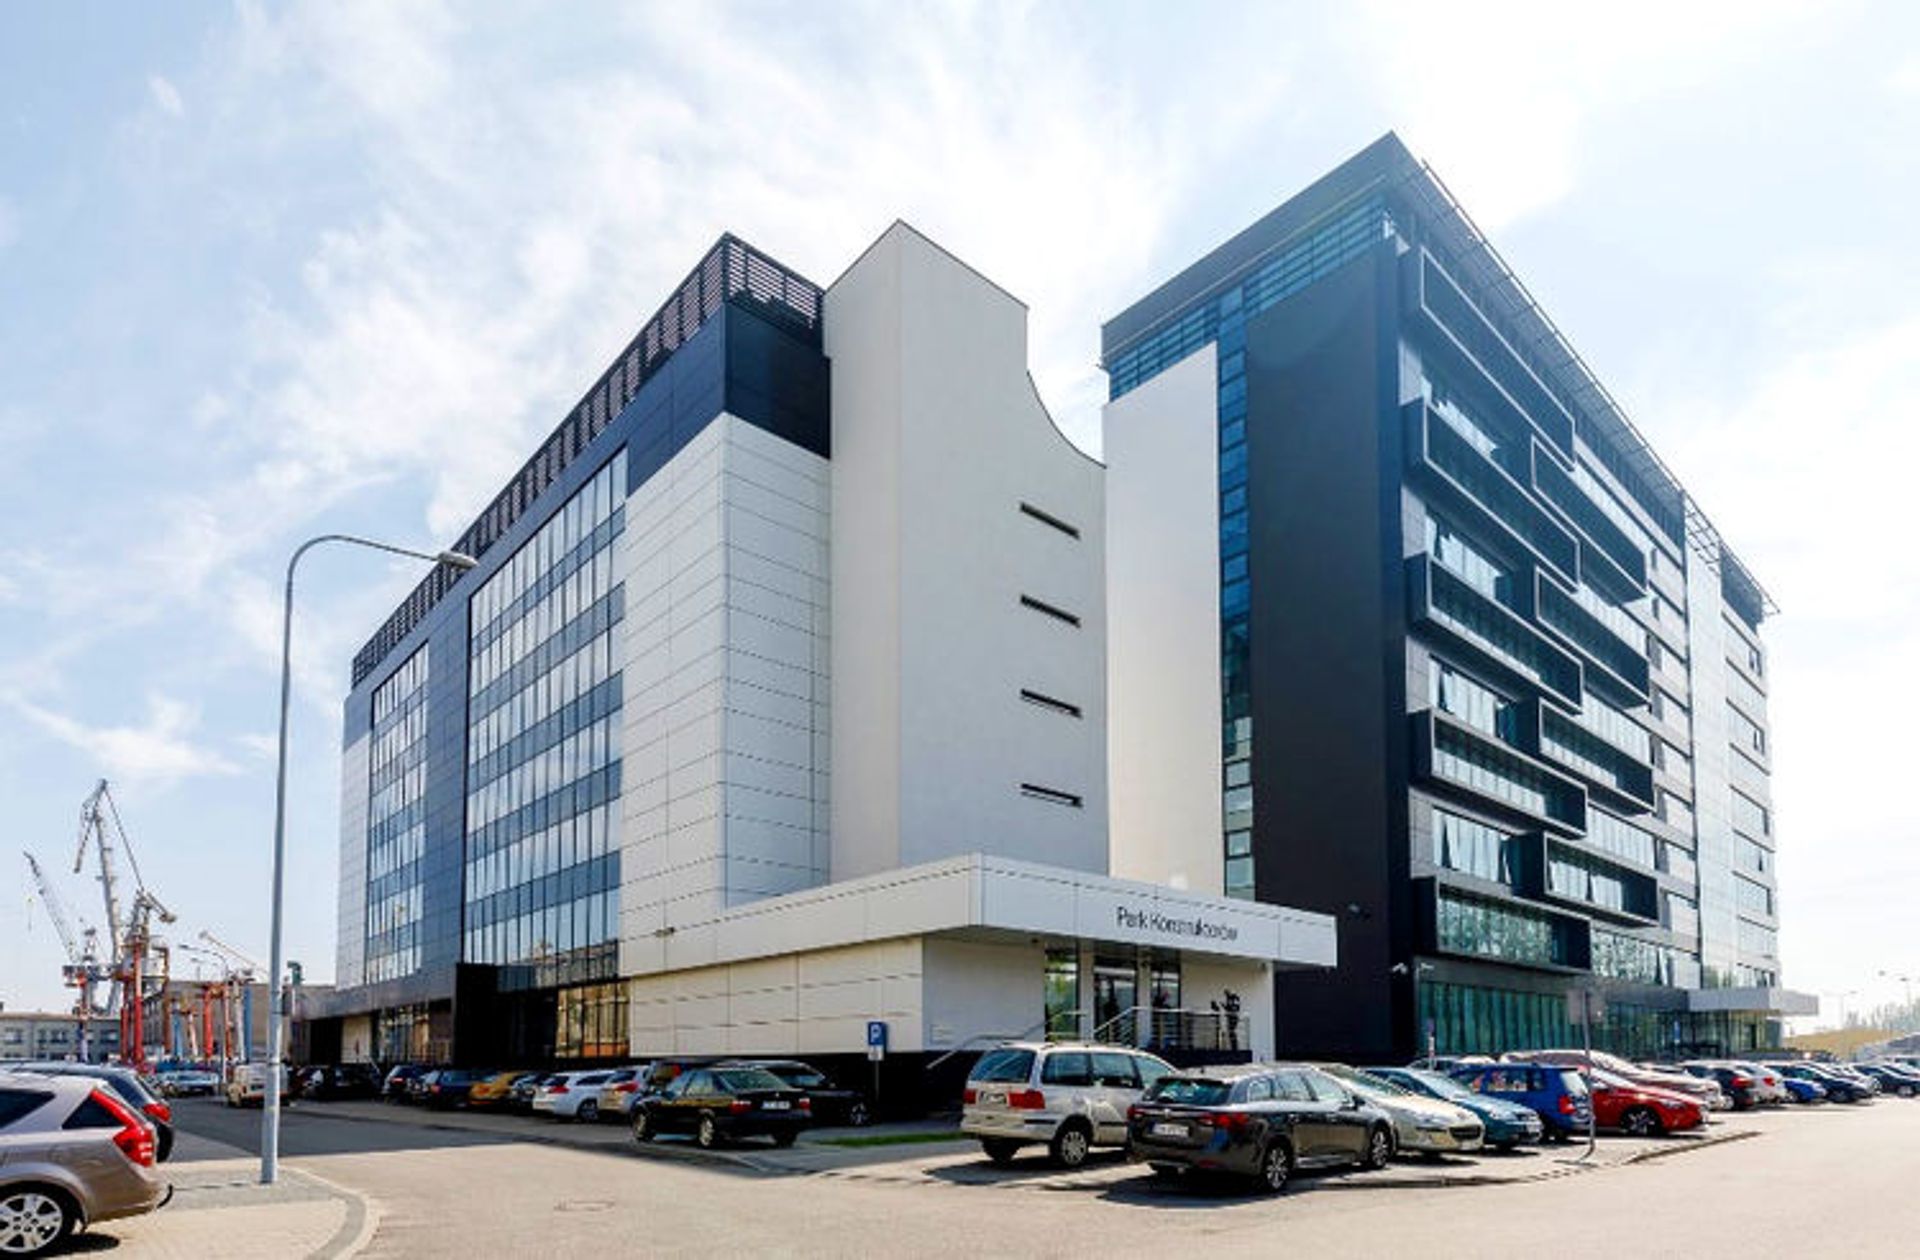 SEMCO otwiera centrum usług w Bałtyckim Porcie Nowych Technologii w Gdyni